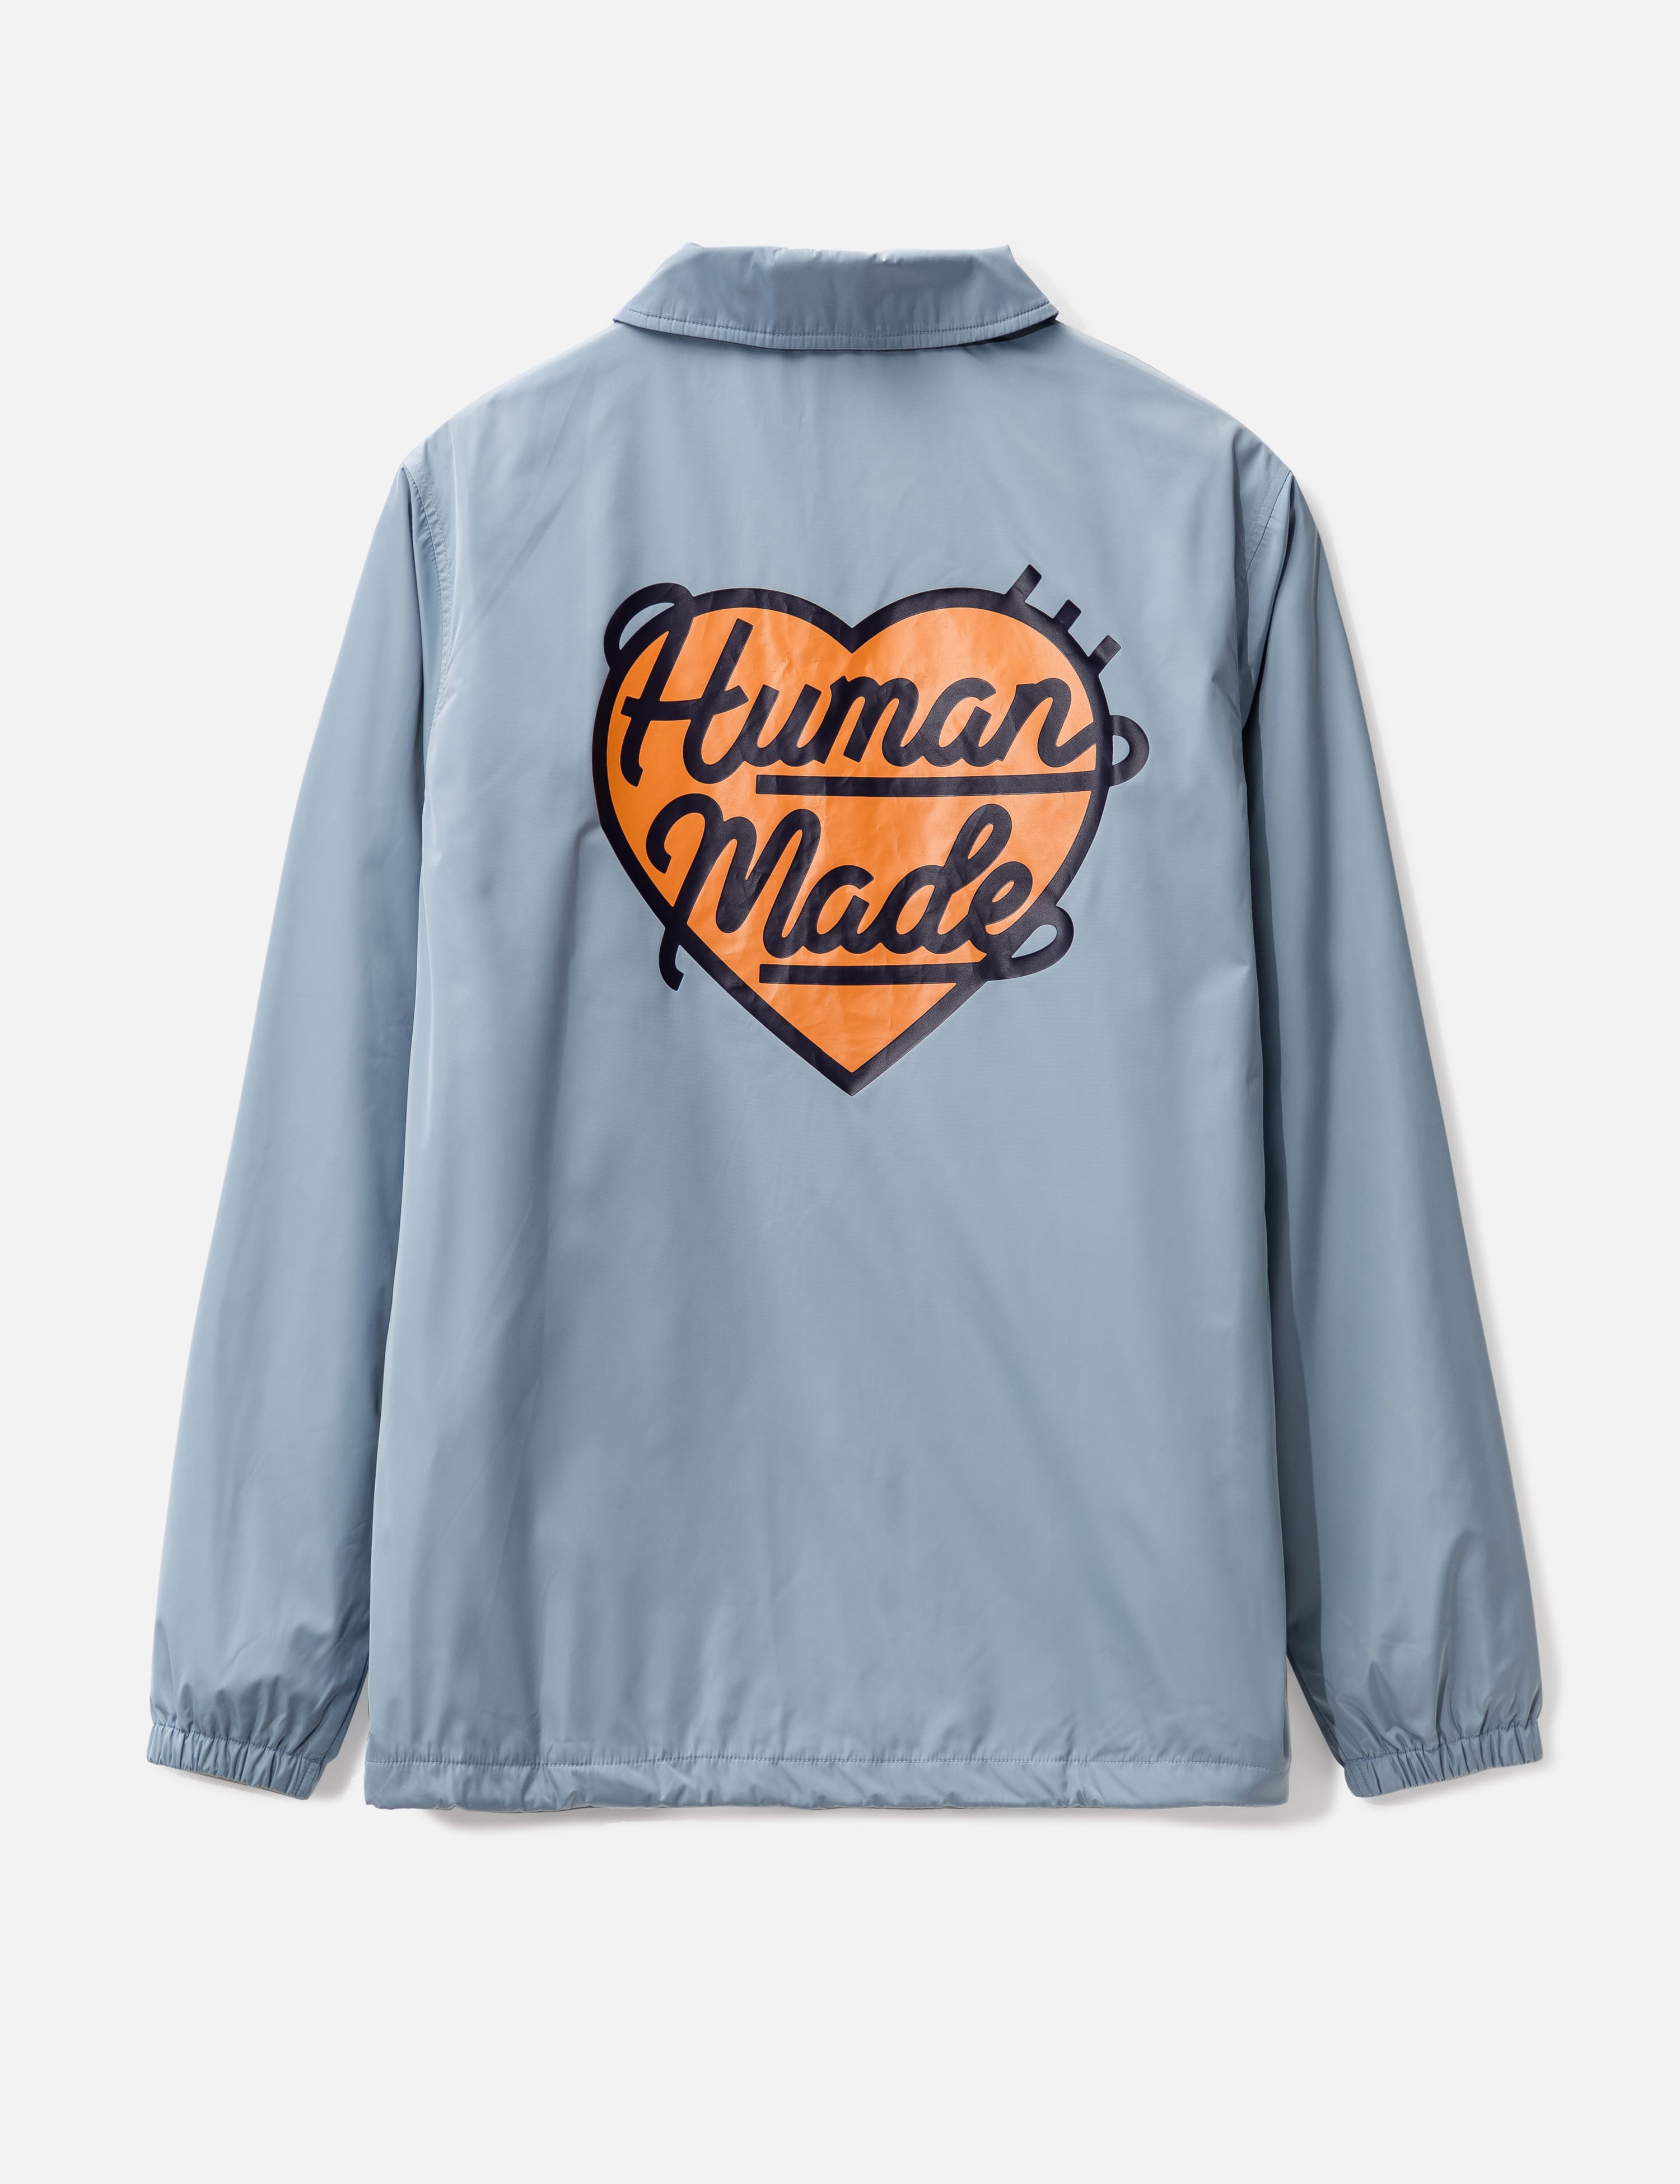 Human Made - コーチ ジャケット | HBX - ハイプビースト(Hypebeast)が 